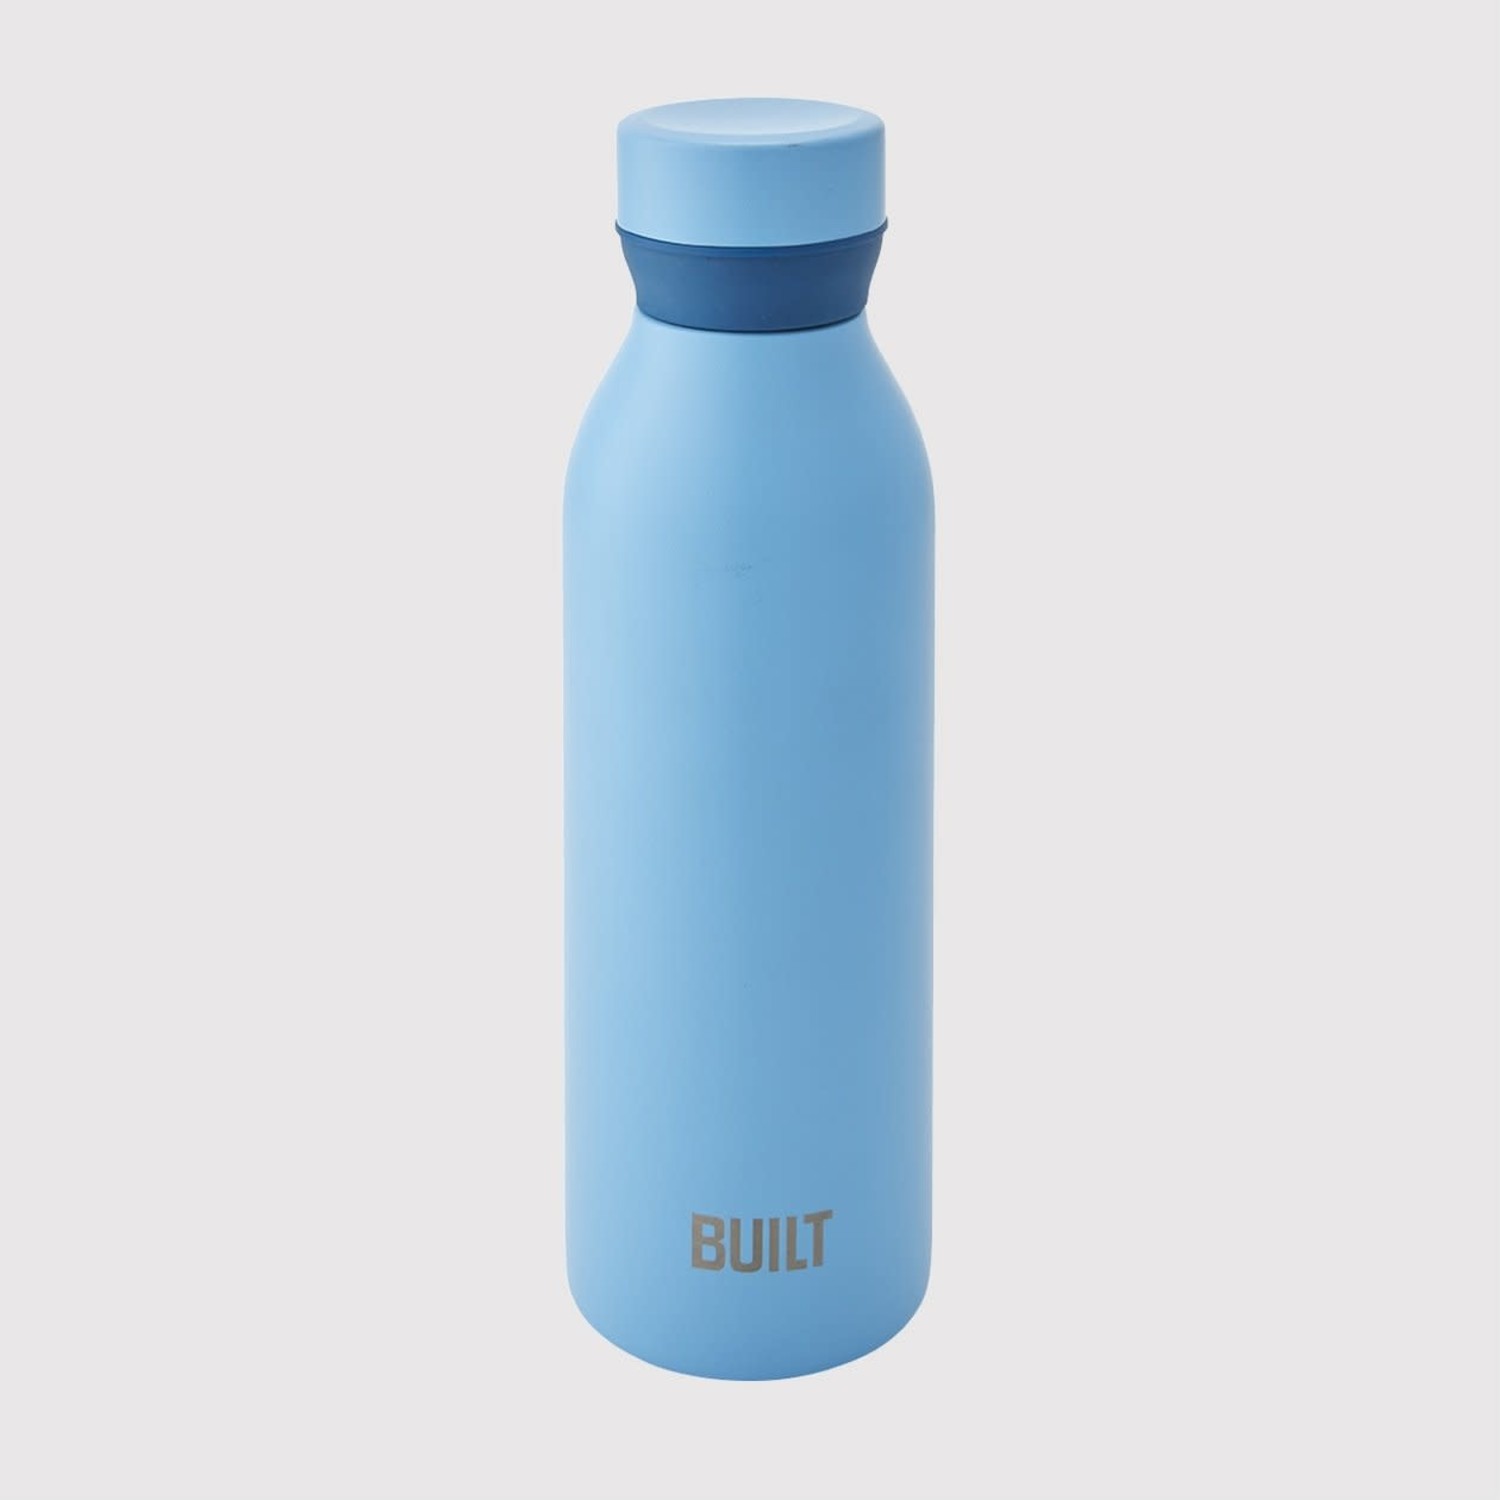 https://cdn.shoplightspeed.com/shops/633447/files/24792676/1500x4000x3/built-18oz-blue-water-bottle.jpg